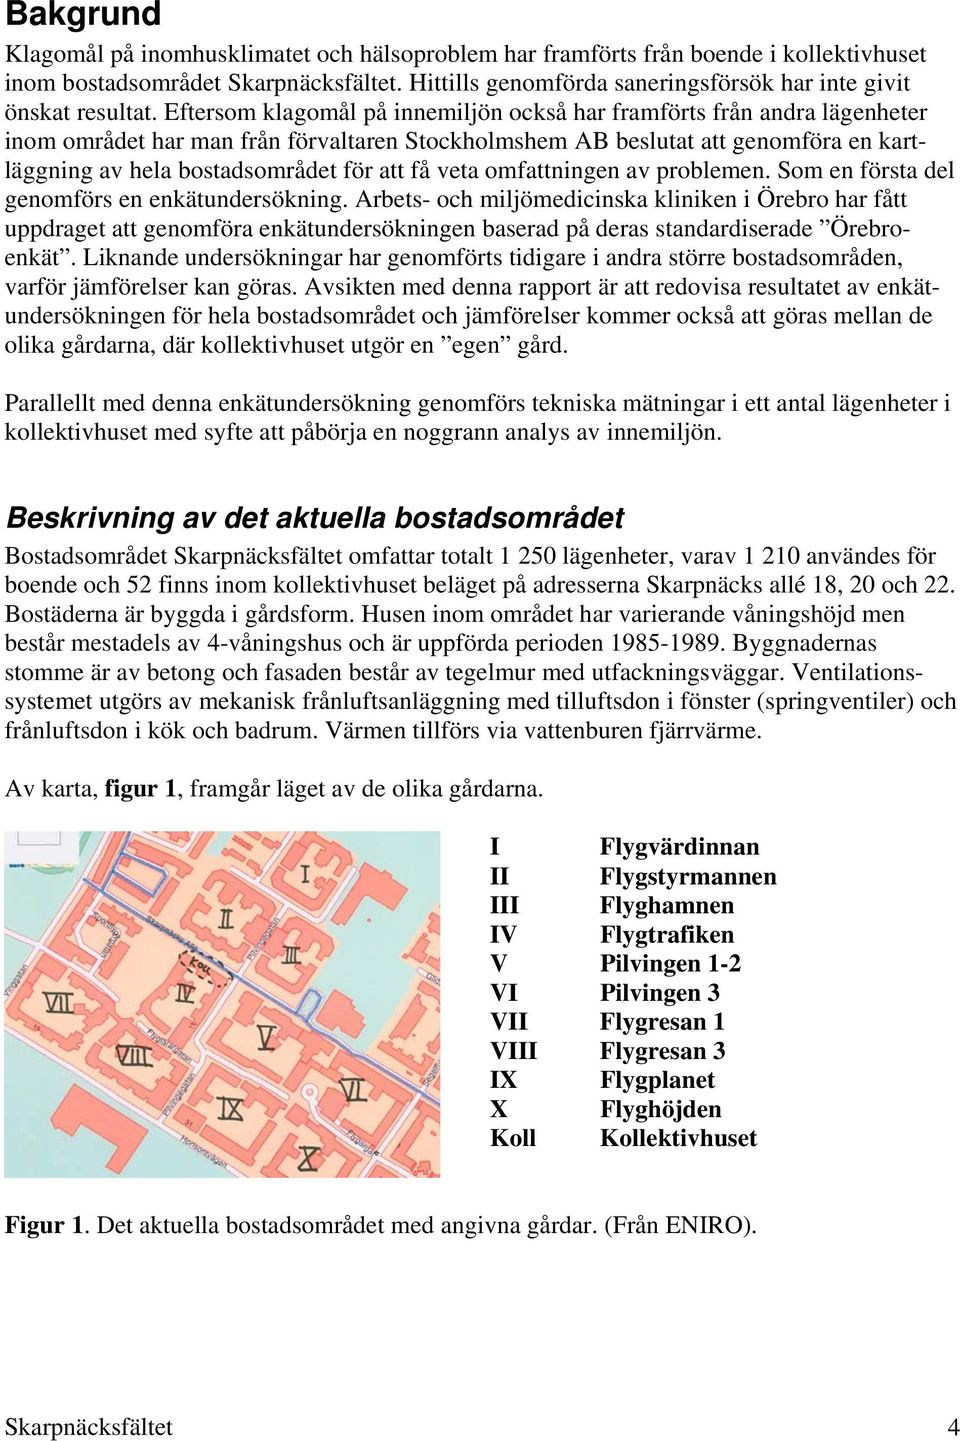 Eftersom klagomål på innemiljön också har framförts från andra lägenheter inom området har man från förvaltaren Stockholmshem AB beslutat att genomföra en kartläggning av hela bostadsområdet för att